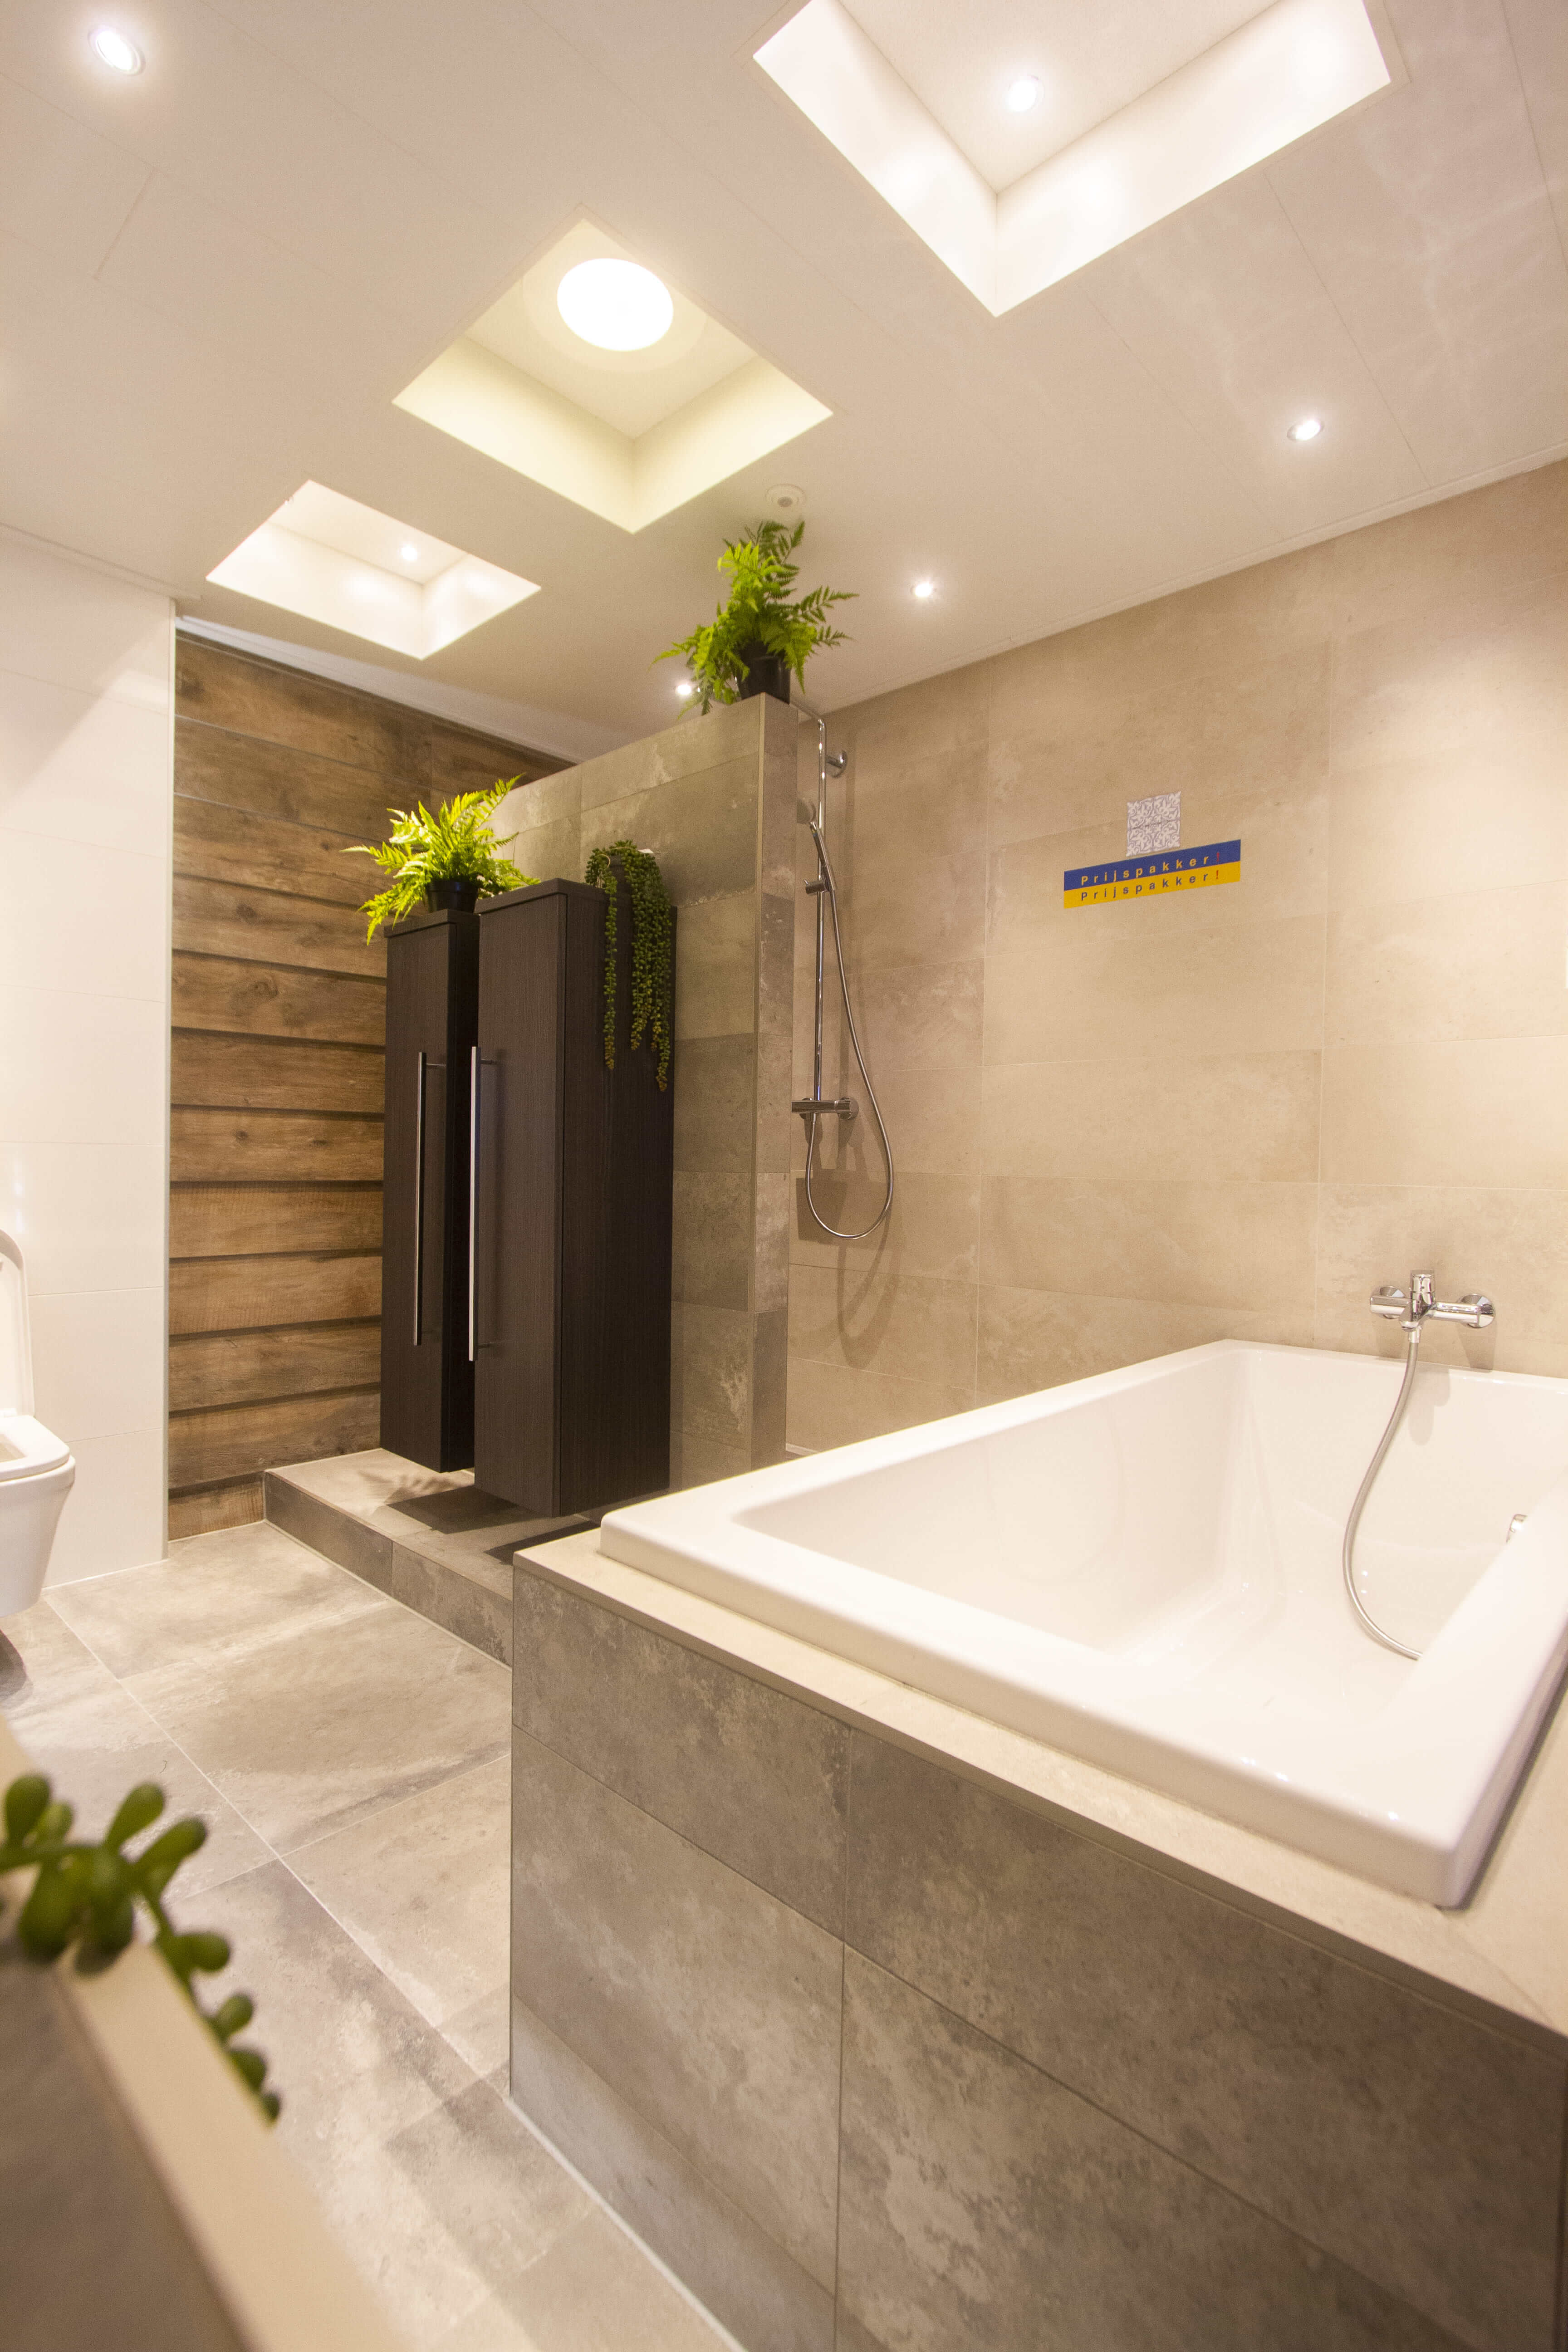 Een badkamer in landelijke stijl heeft zachte en warme kleuren